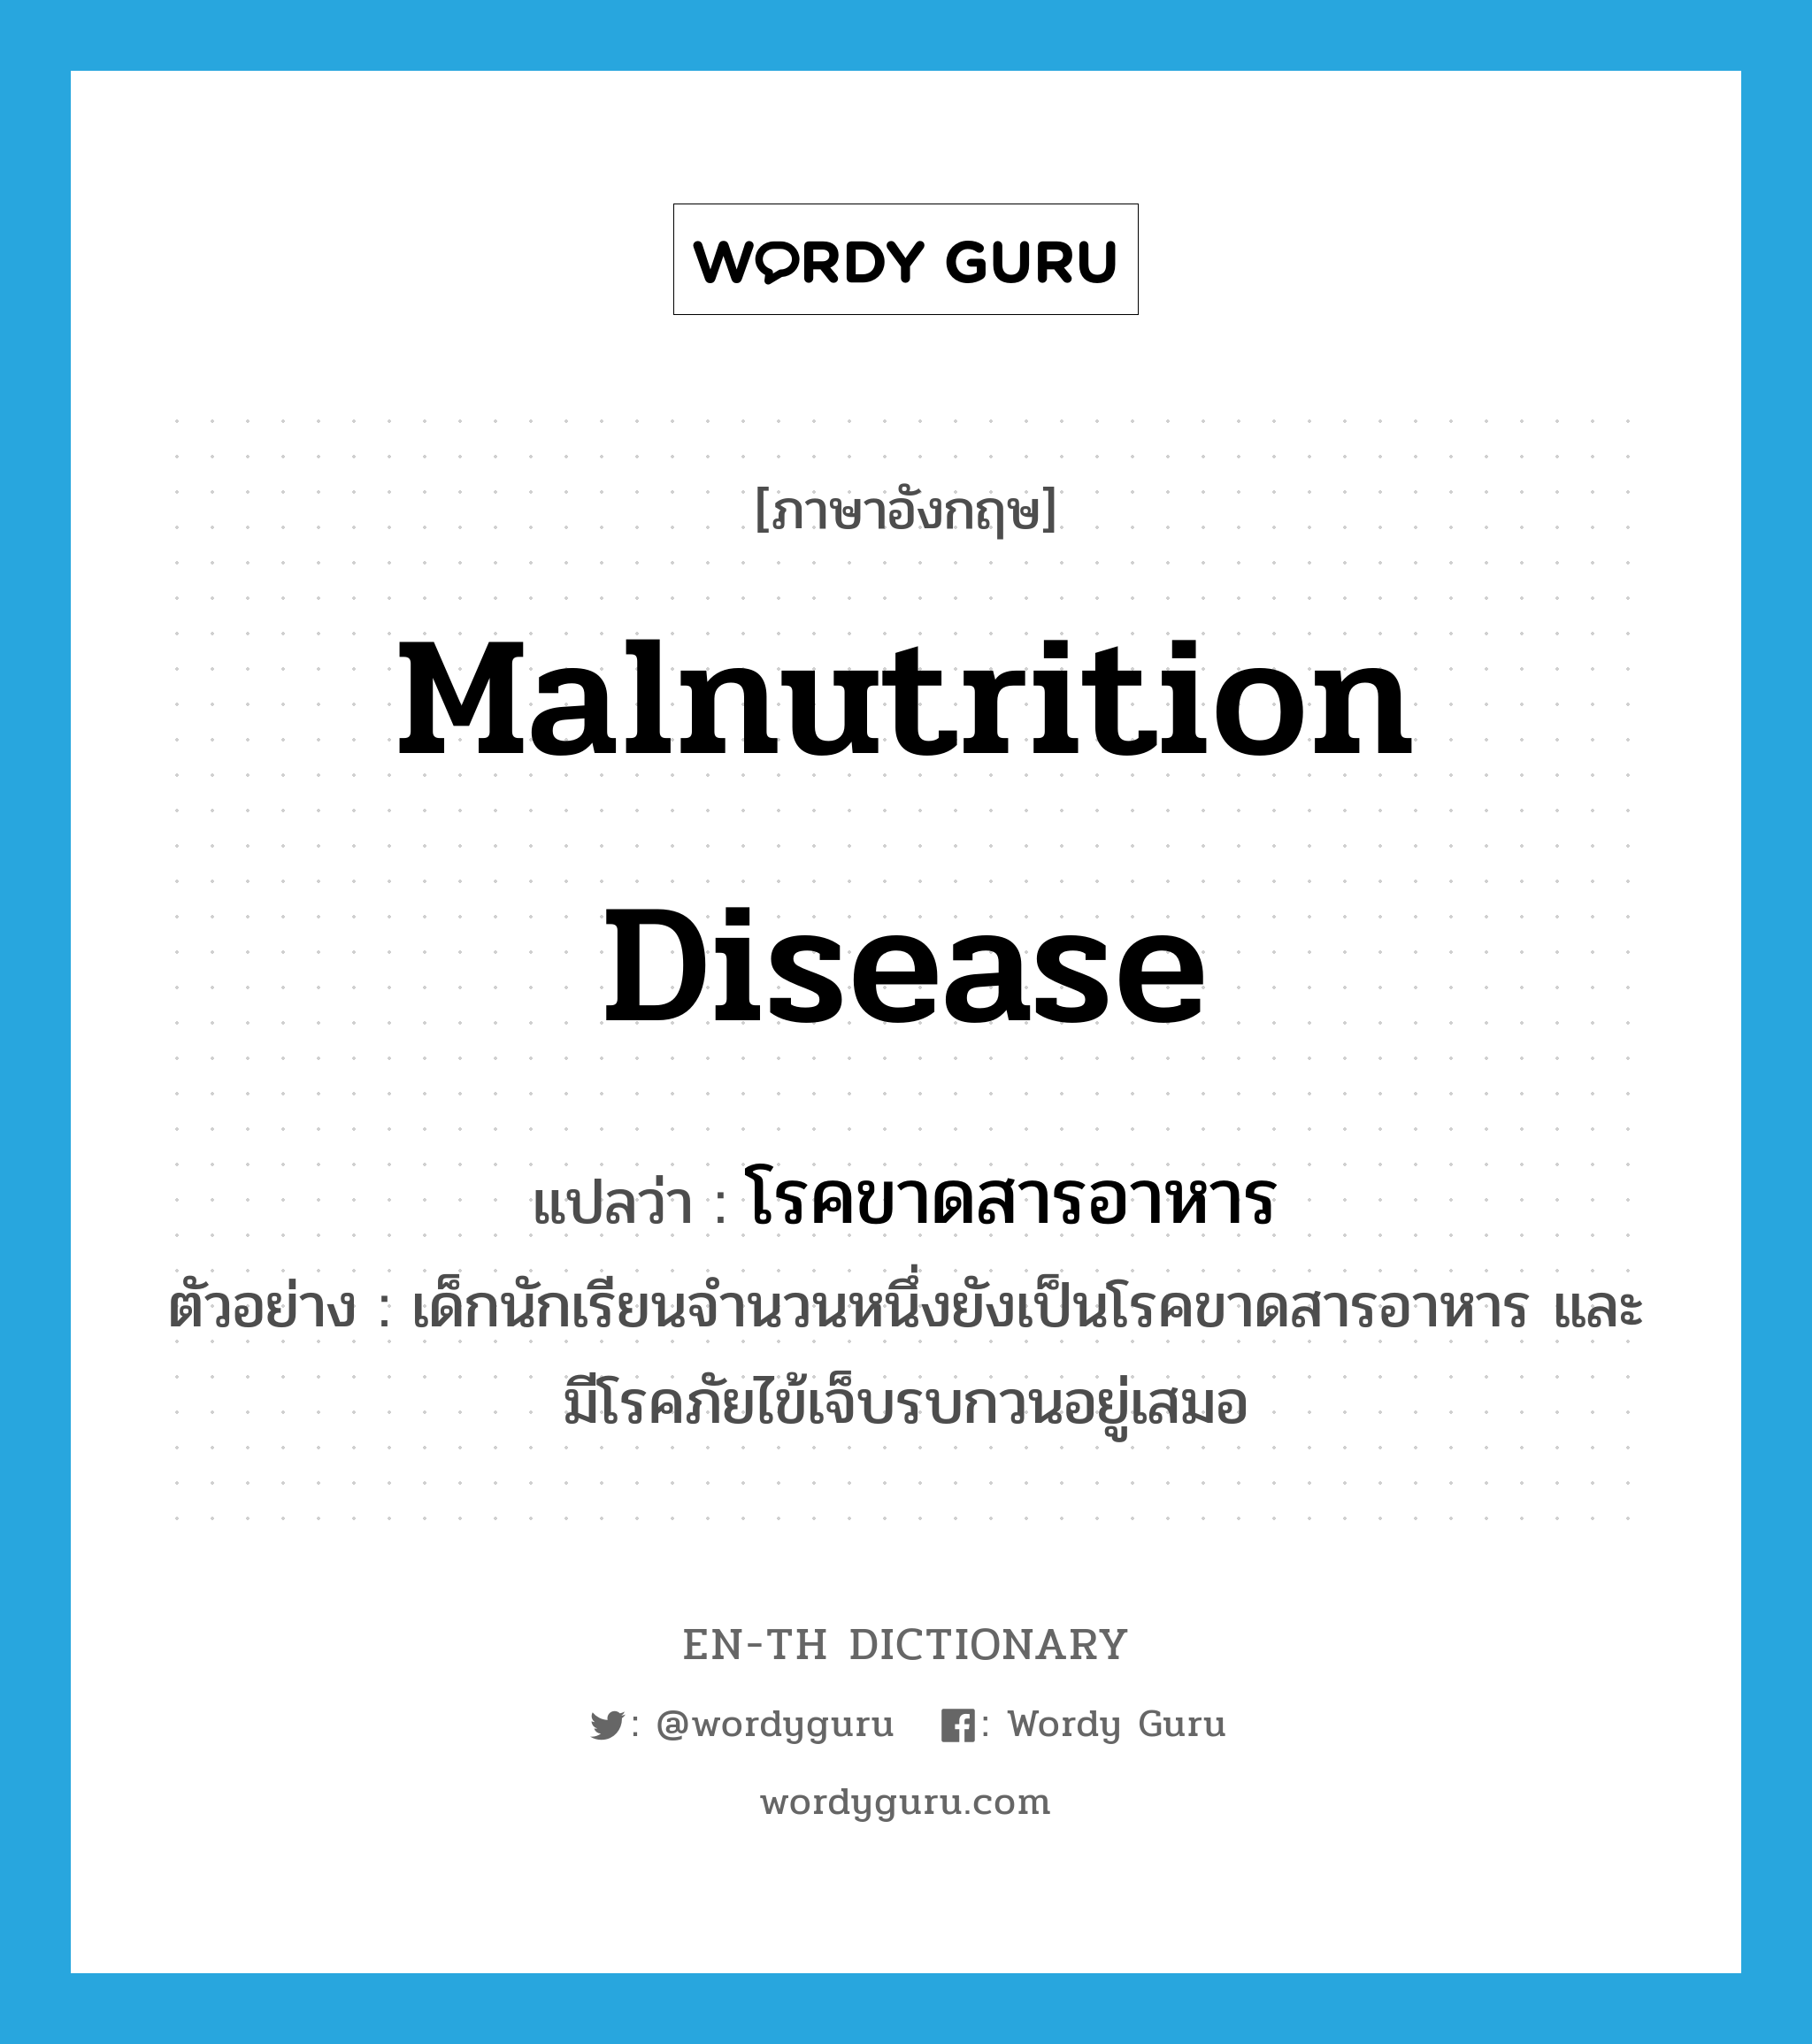 โรคขาดสารอาหาร ภาษาอังกฤษ?, คำศัพท์ภาษาอังกฤษ โรคขาดสารอาหาร แปลว่า malnutrition disease ประเภท N ตัวอย่าง เด็กนักเรียนจำนวนหนึ่งยังเป็นโรคขาดสารอาหาร และมีโรคภัยไข้เจ็บรบกวนอยู่เสมอ หมวด N